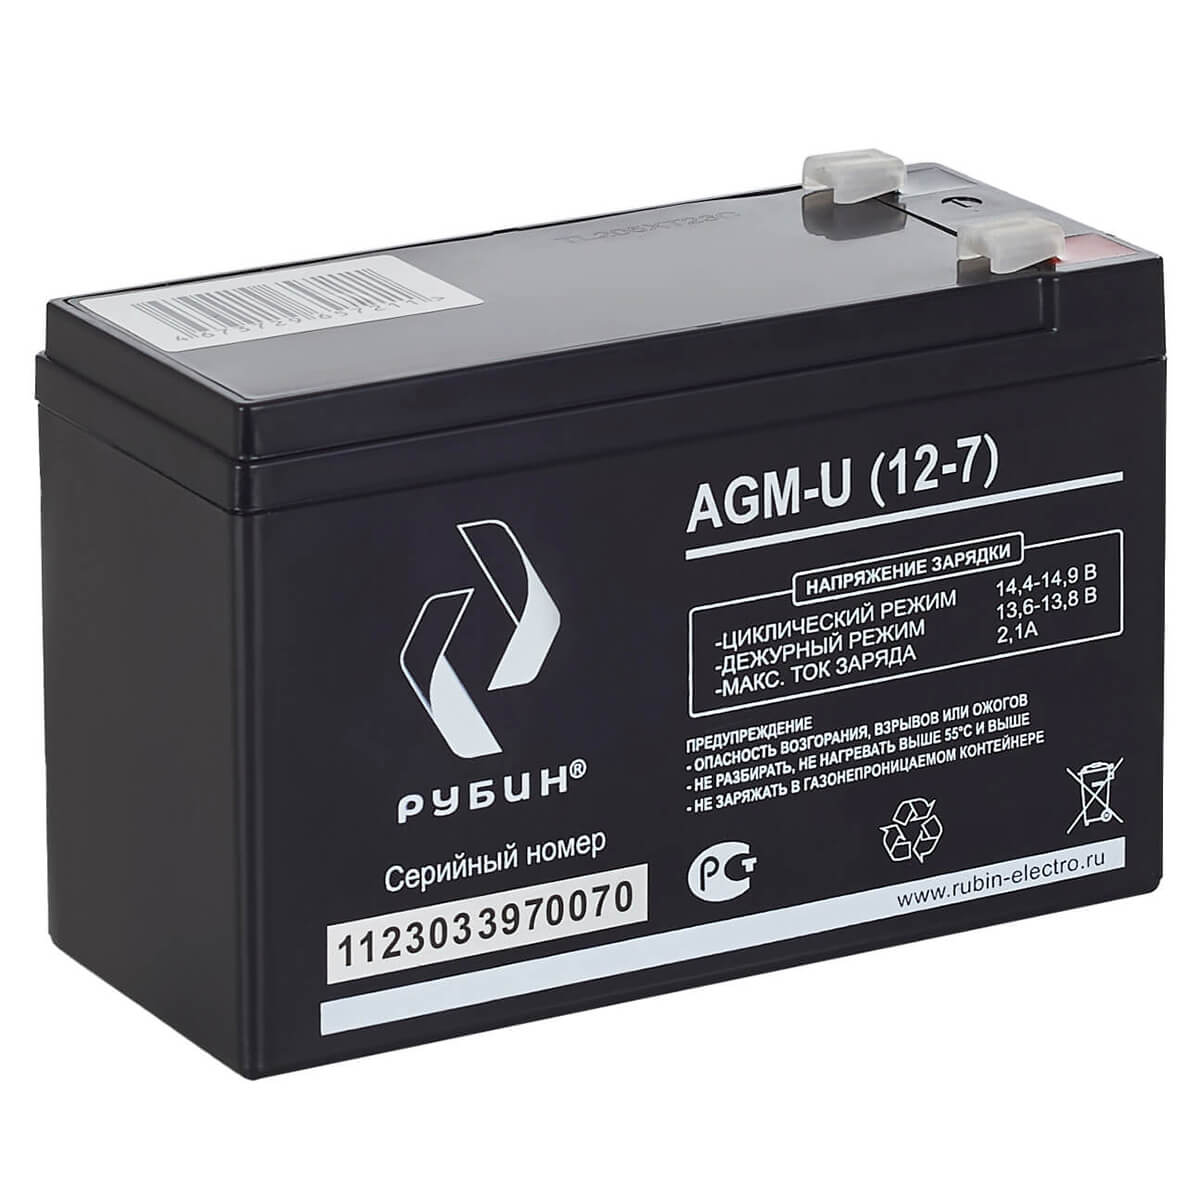 Рубин AGM-U (12-7) фото